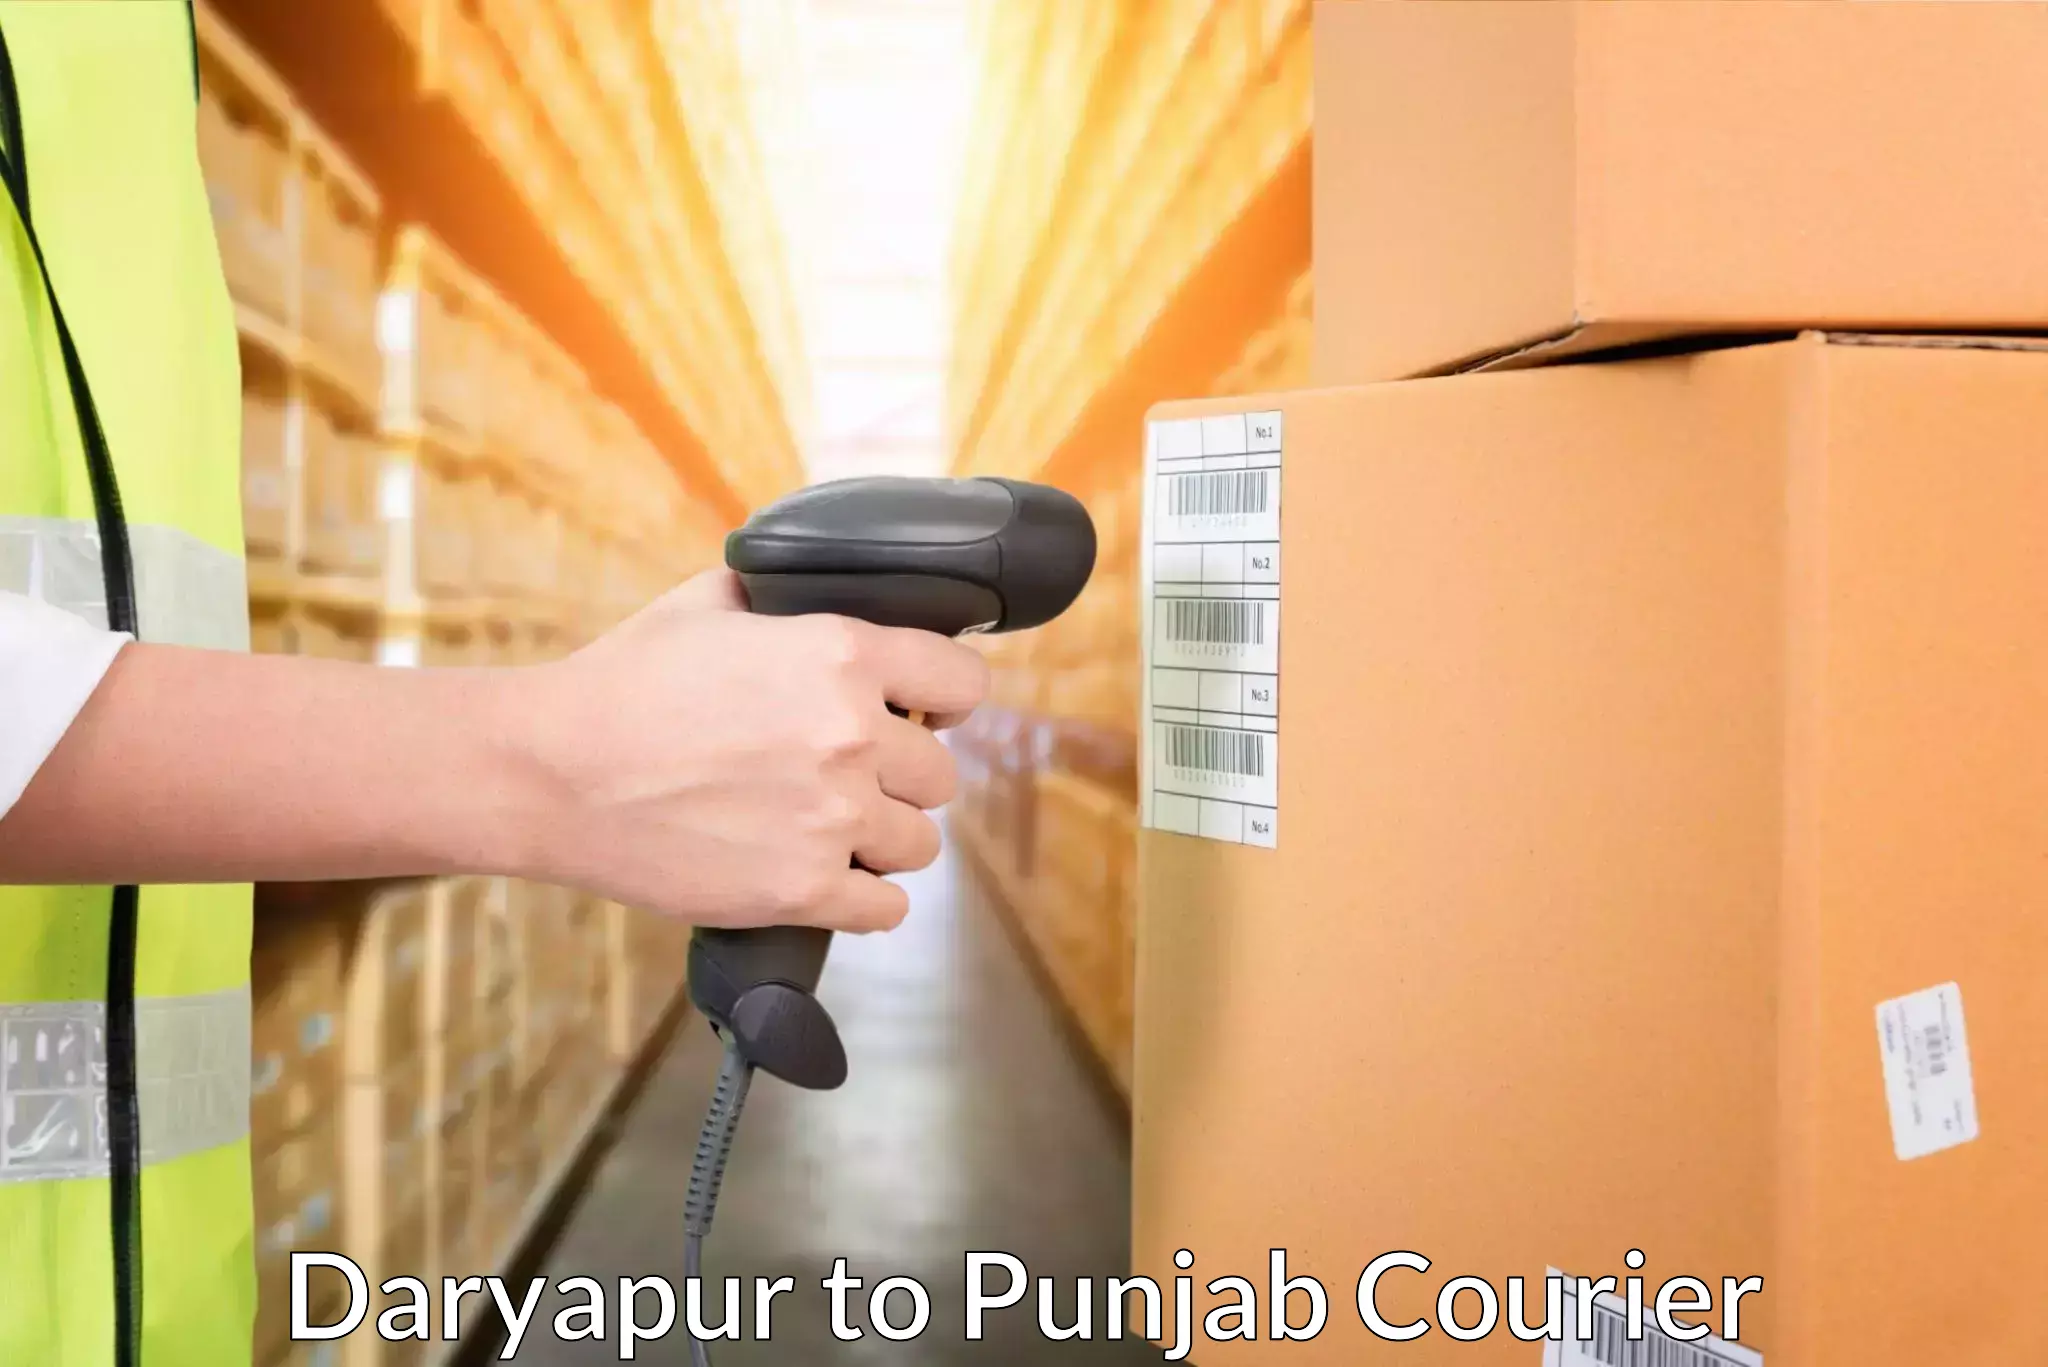 Express shipping in Daryapur to Zirakpur